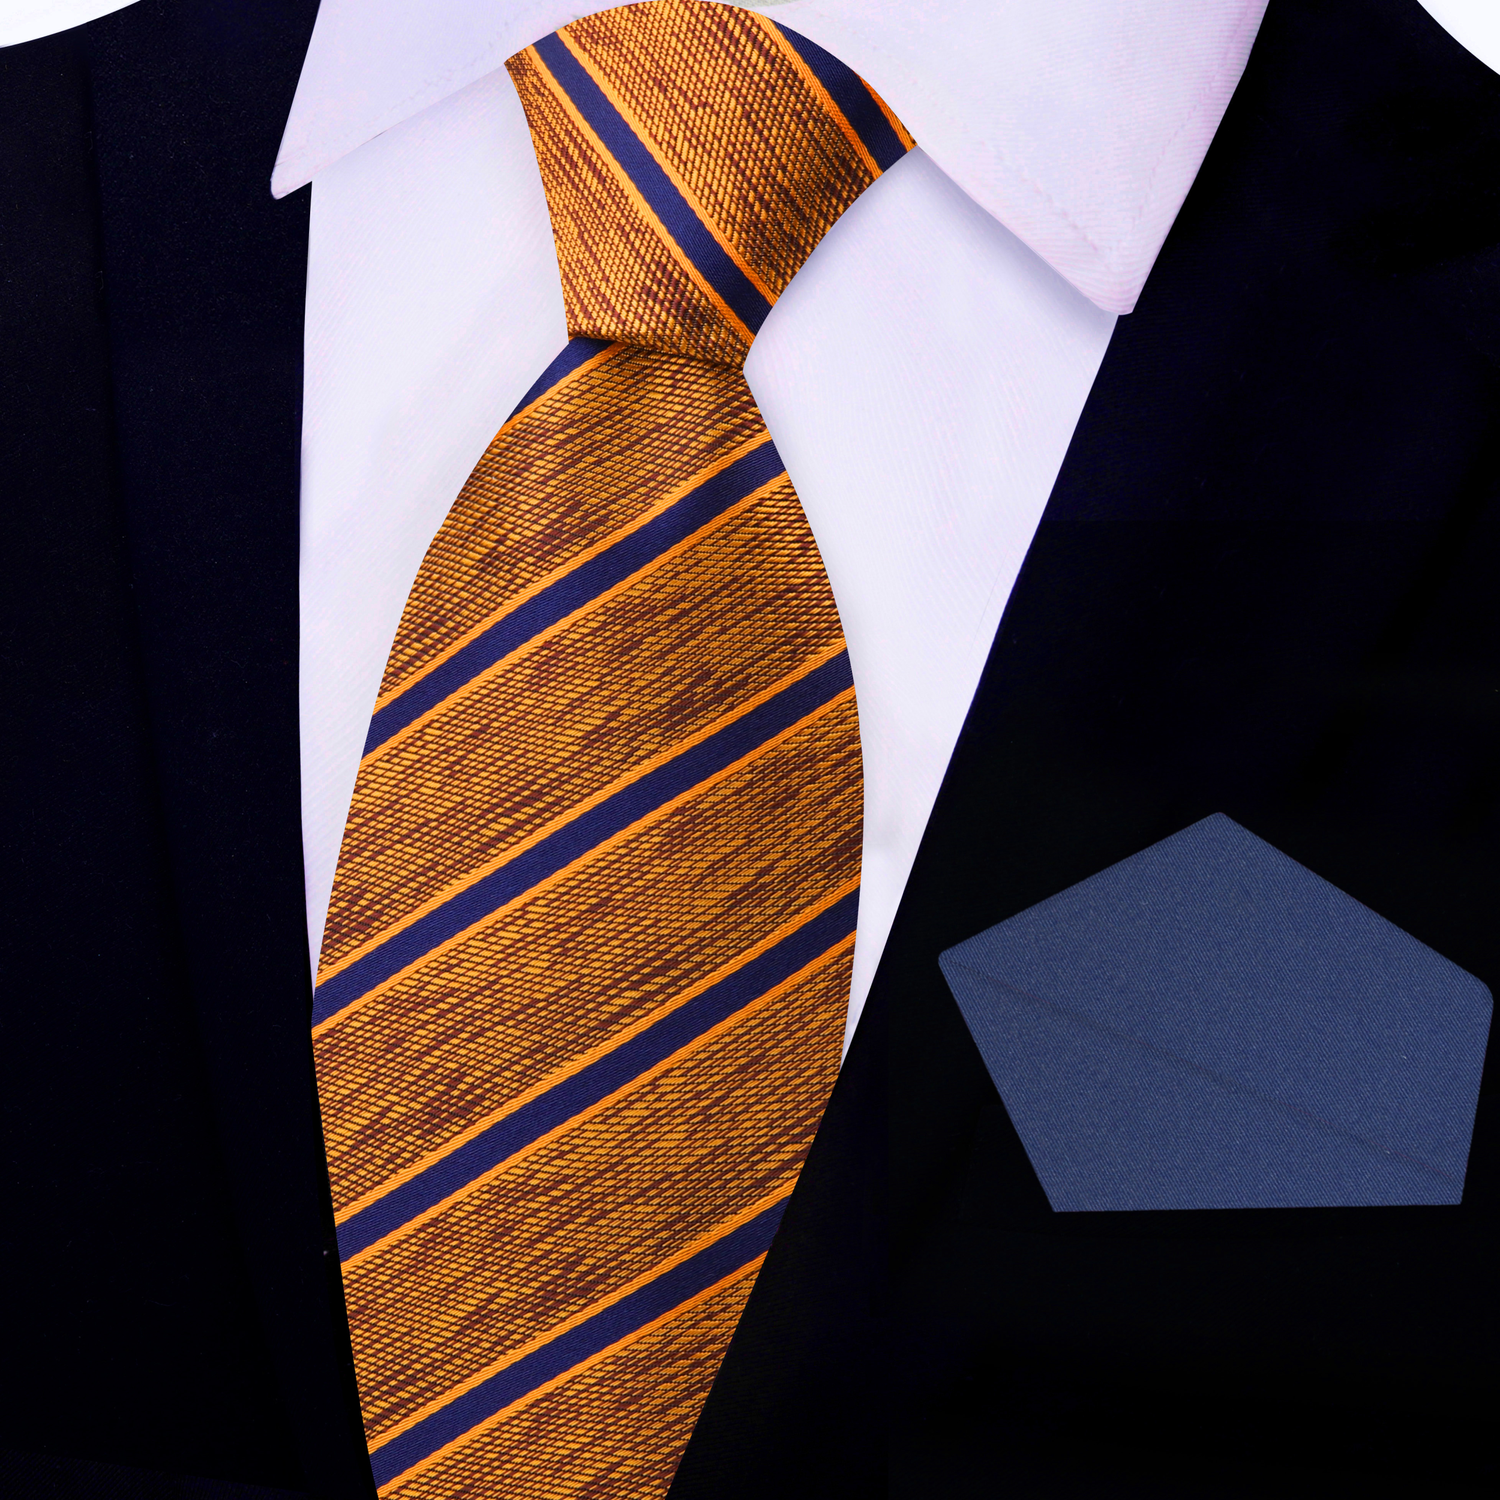 View 2: Orange, Brown, Blue Stripe Necktie with Blue Square